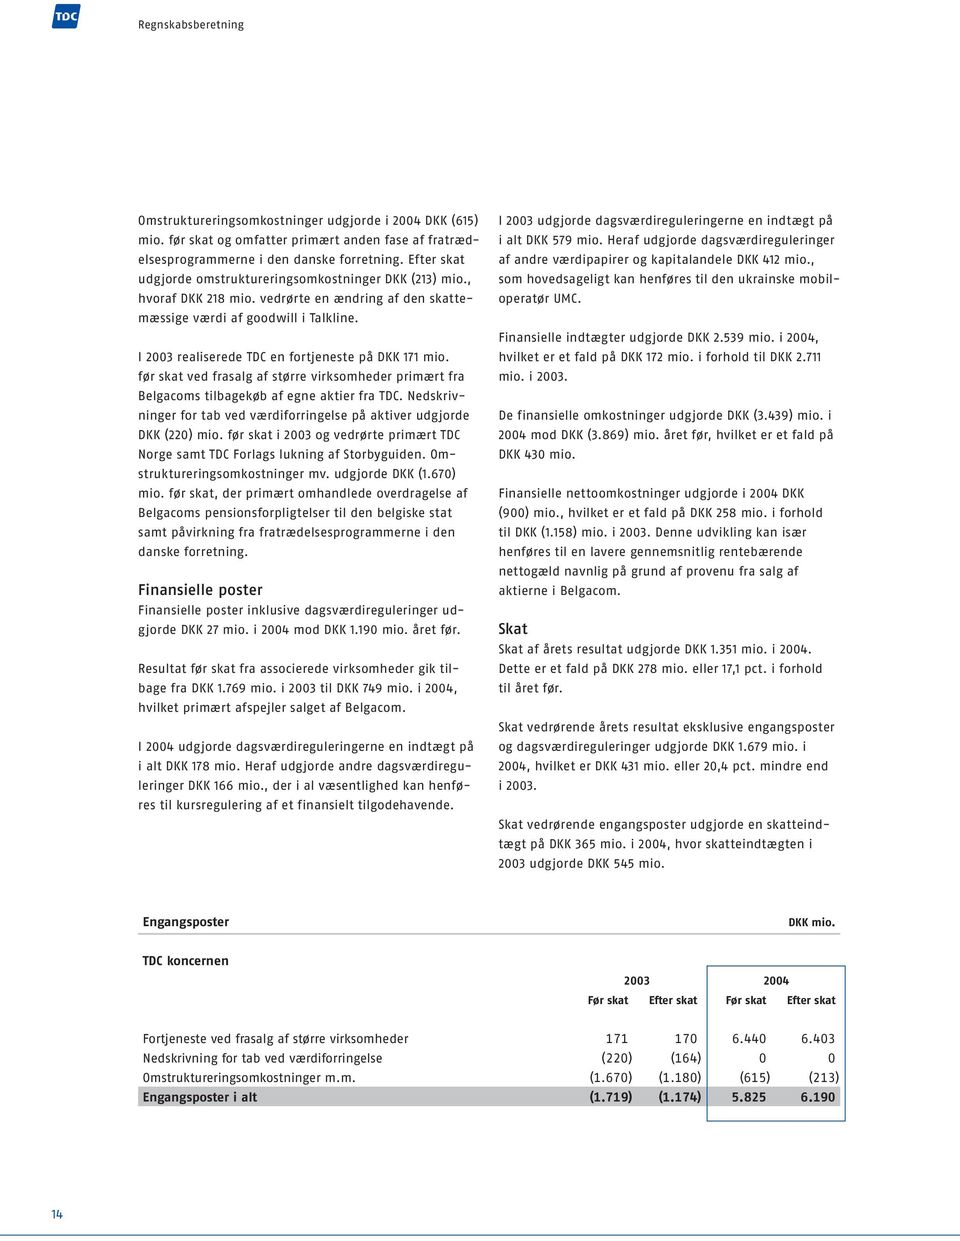 I 2003 realiserede TDC en fortjeneste på DKK 171 mio. før skat ved frasalg af større virksomheder primært fra Belgacoms tilbagekøb af egne aktier fra TDC.